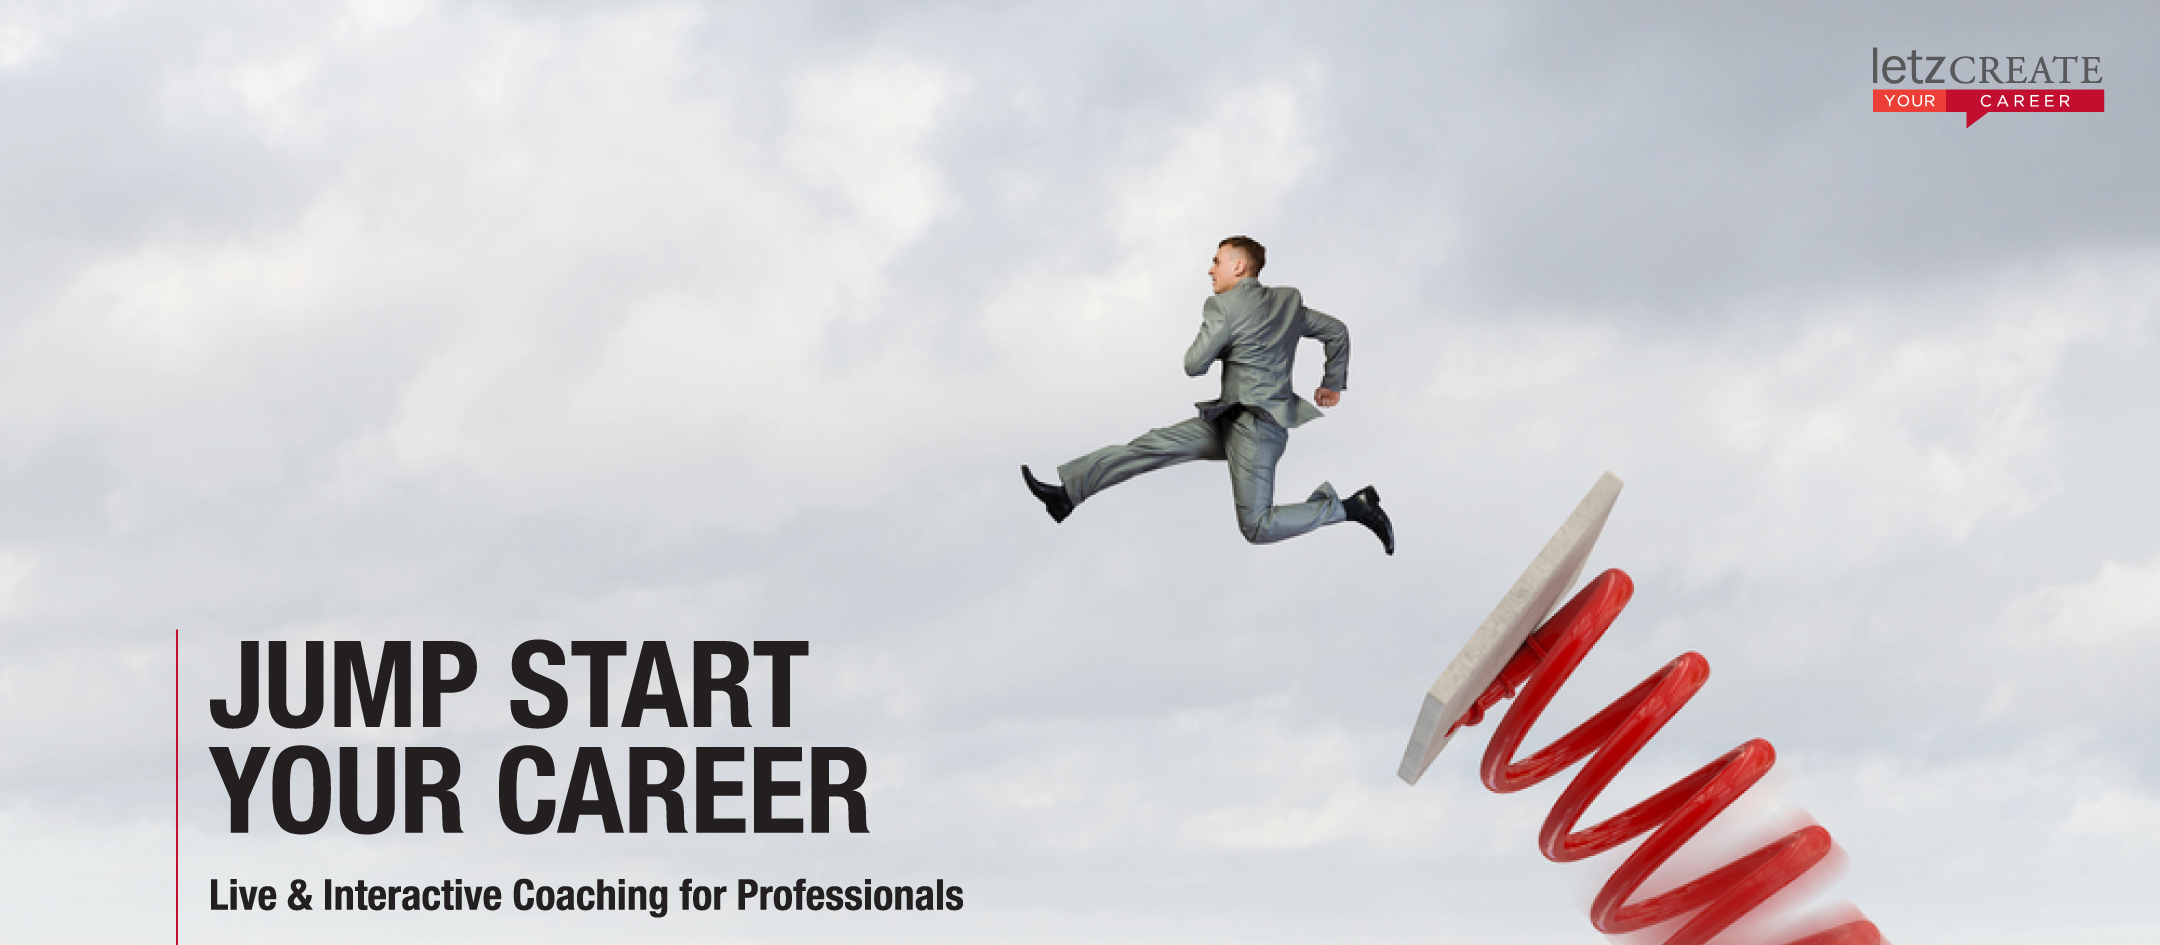 Start your next career